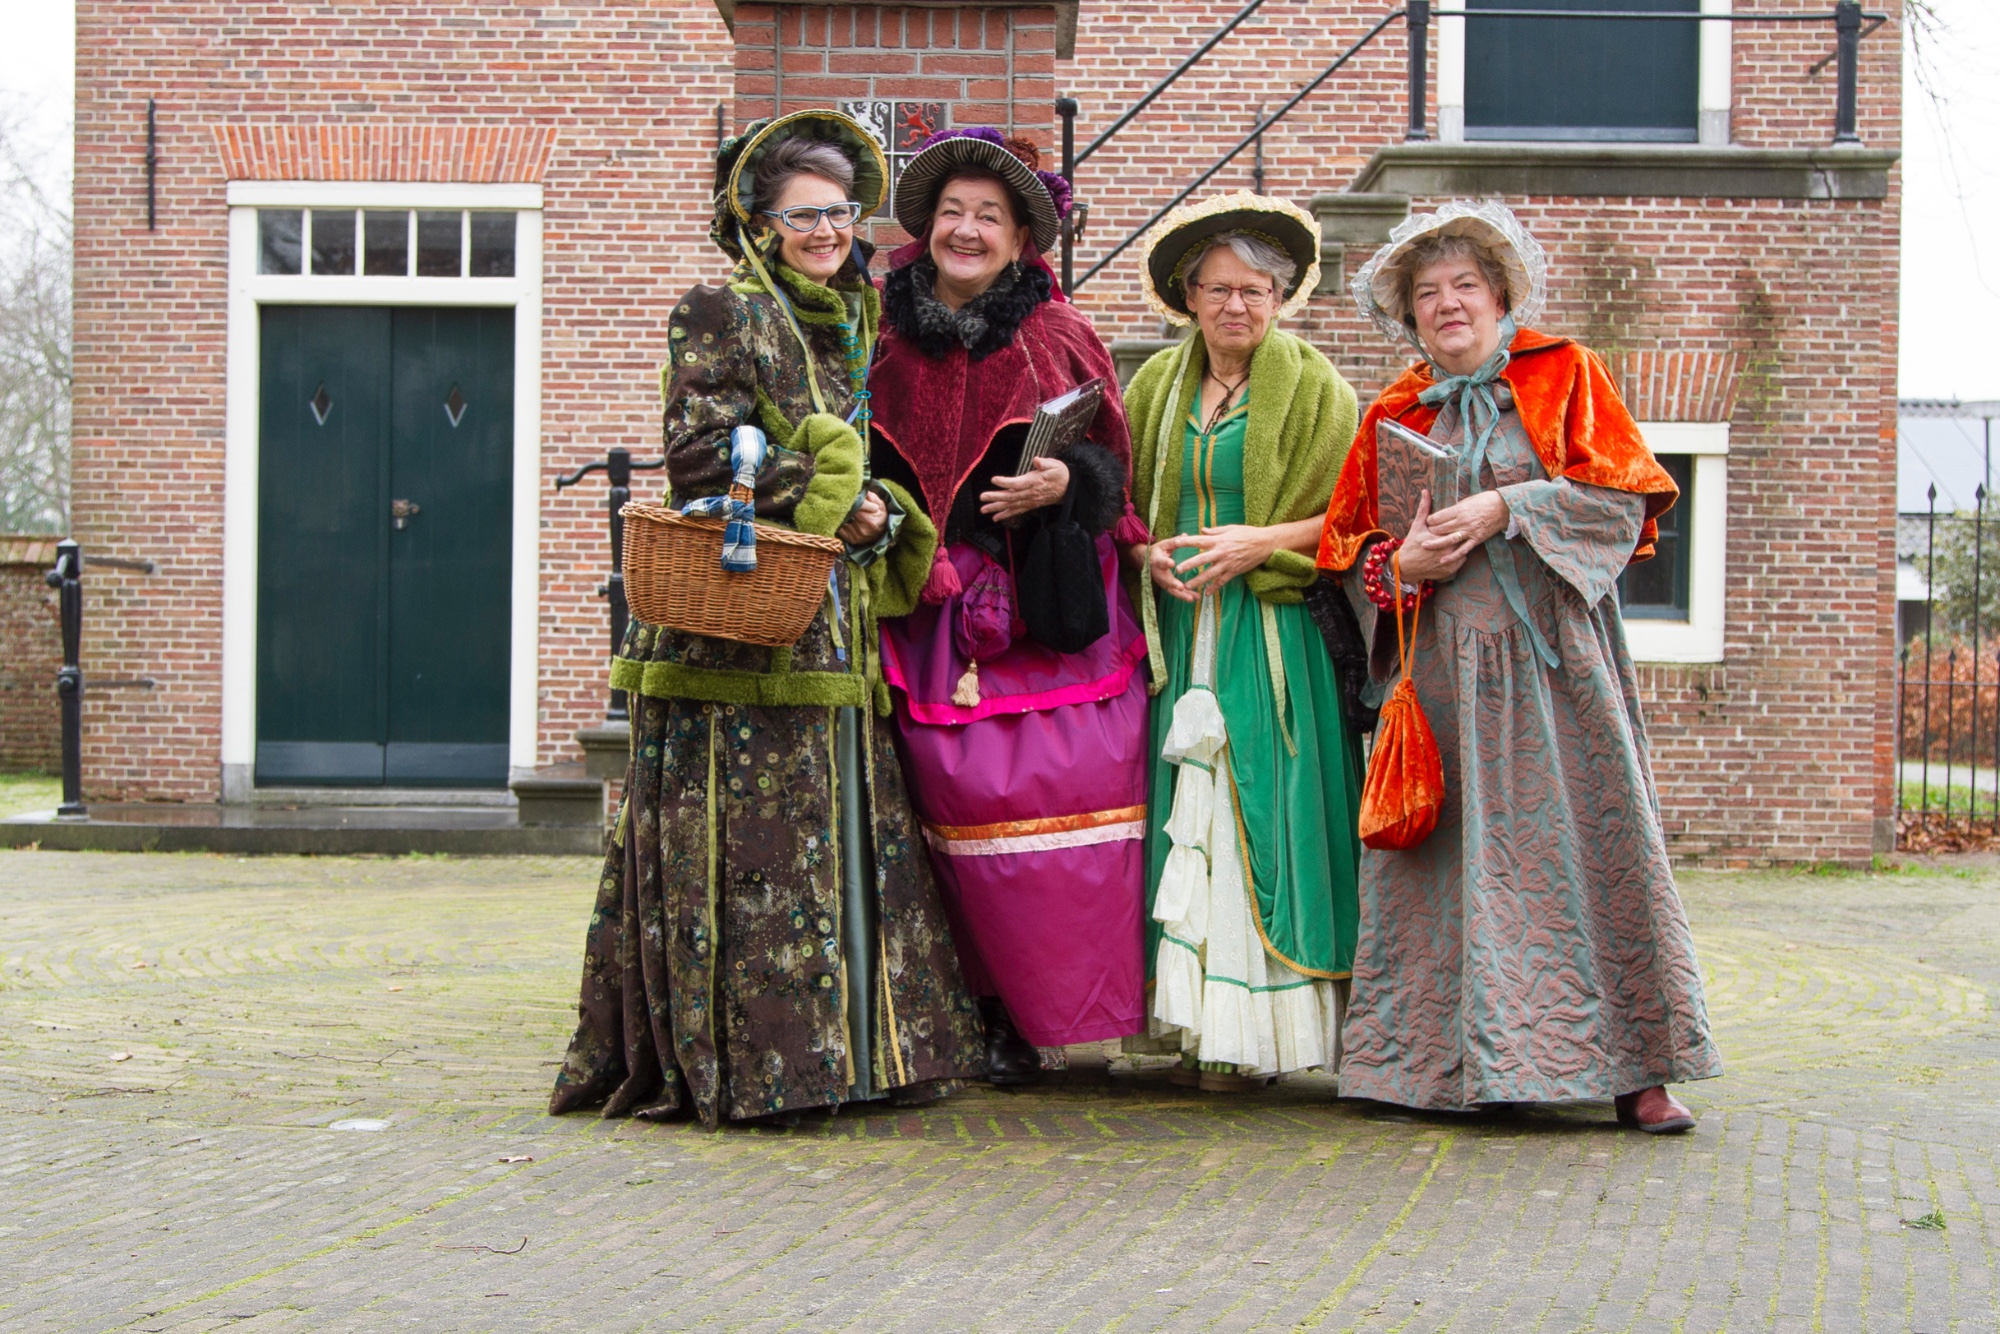 Dickens' Sisters vlnr: Jessica van Yperen, Hetty Spaanderman, Anneke van Tongeren en Anja Kollaard (foto: Anita Webbe)